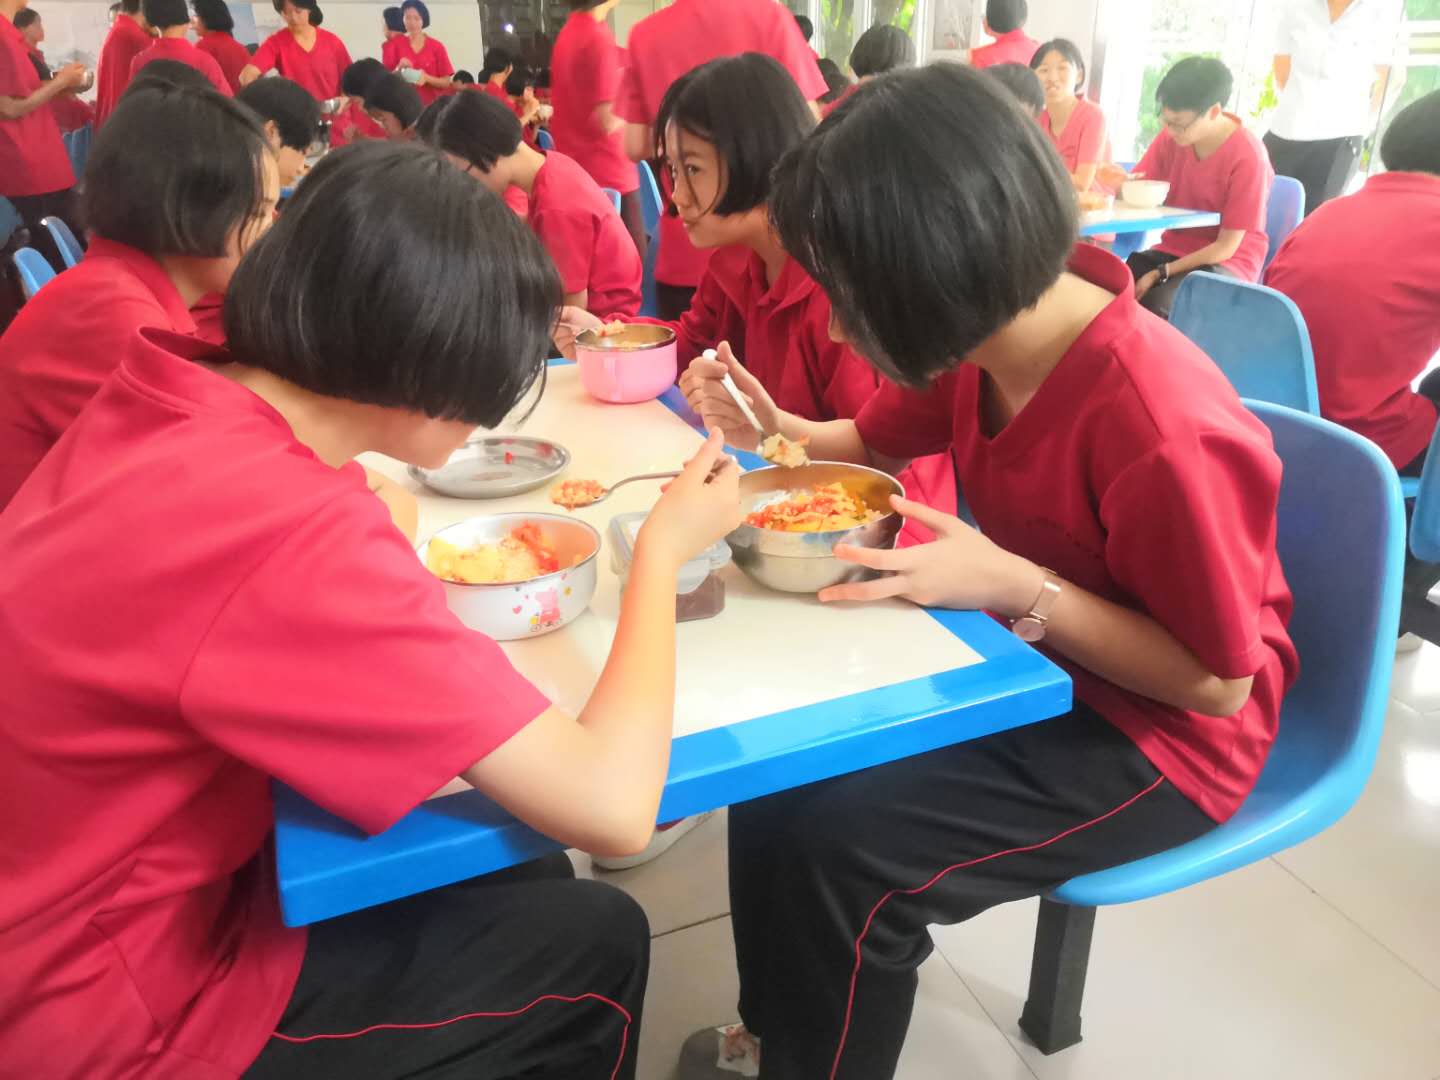 学校食堂学生吃饭照片-图库-五毛网